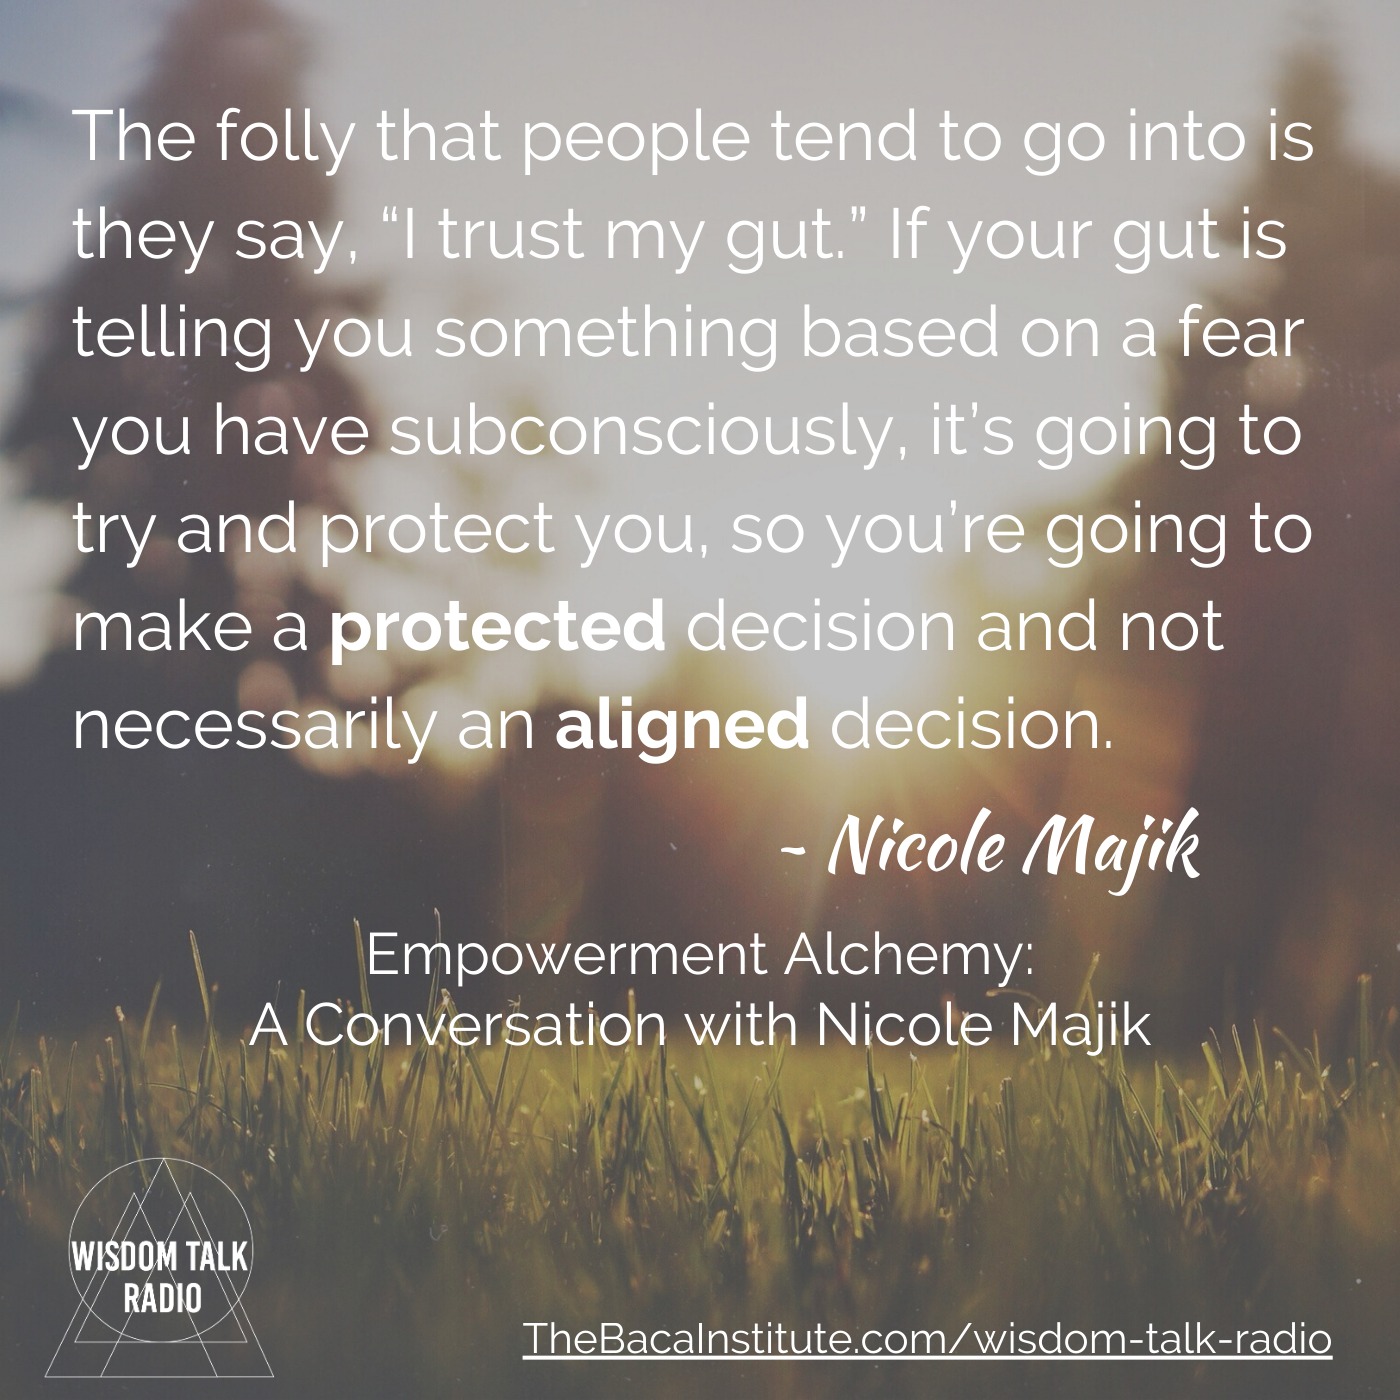 Empowerment Alchemy: a Conversation with Nicole Majik